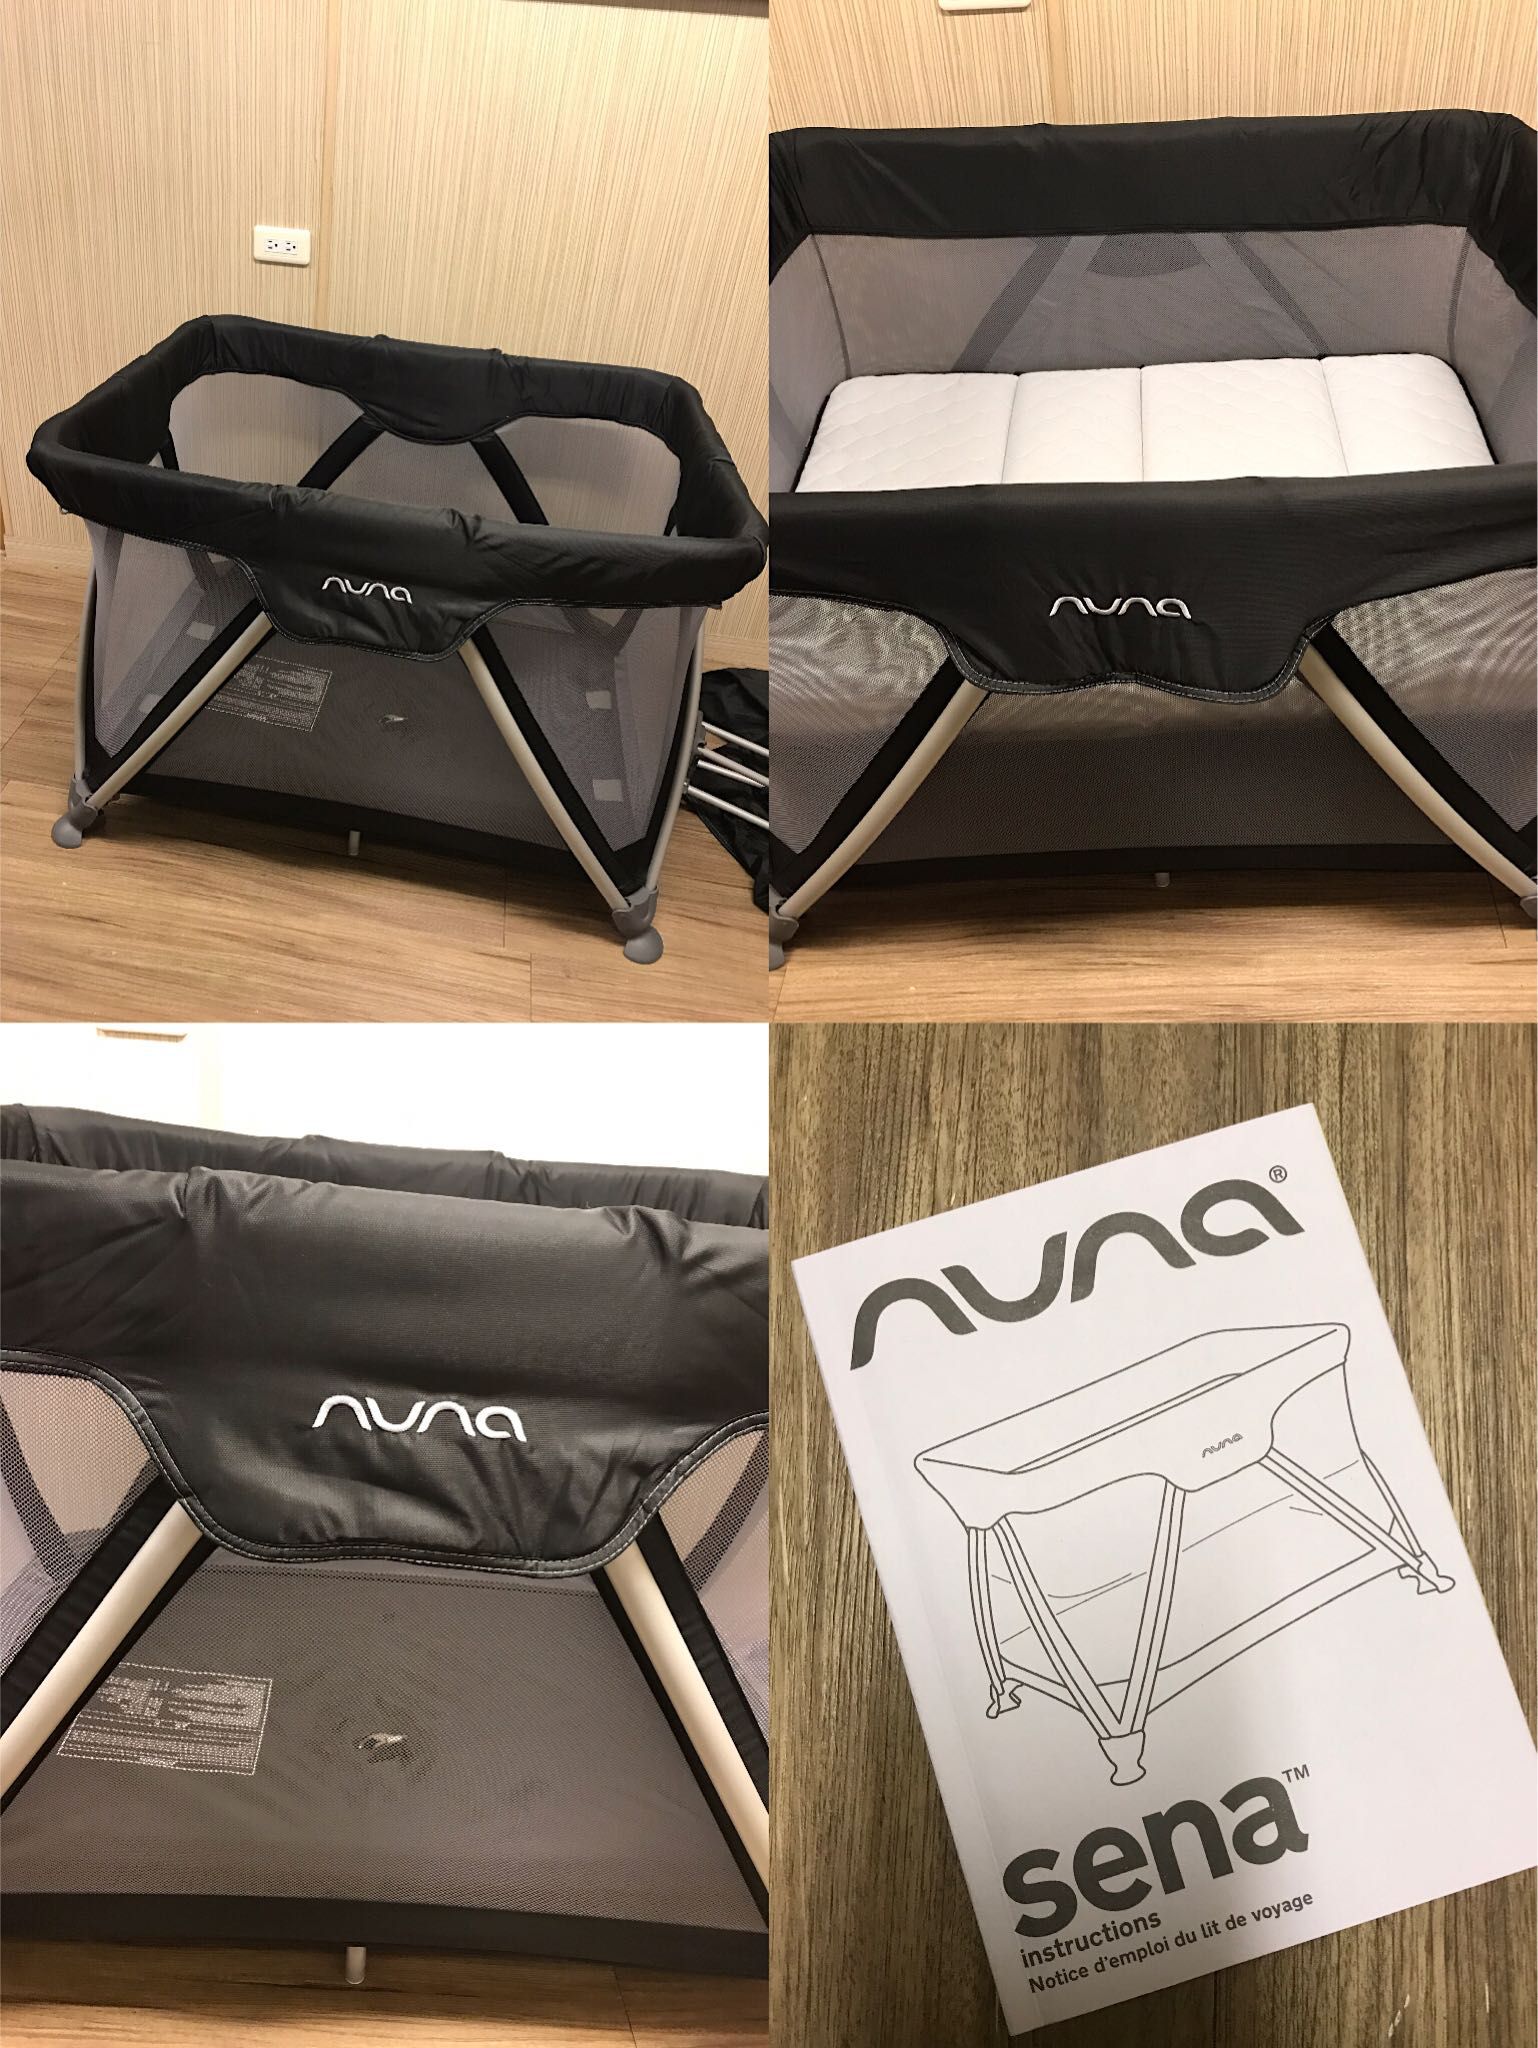 售 Nuna sena遊戲床